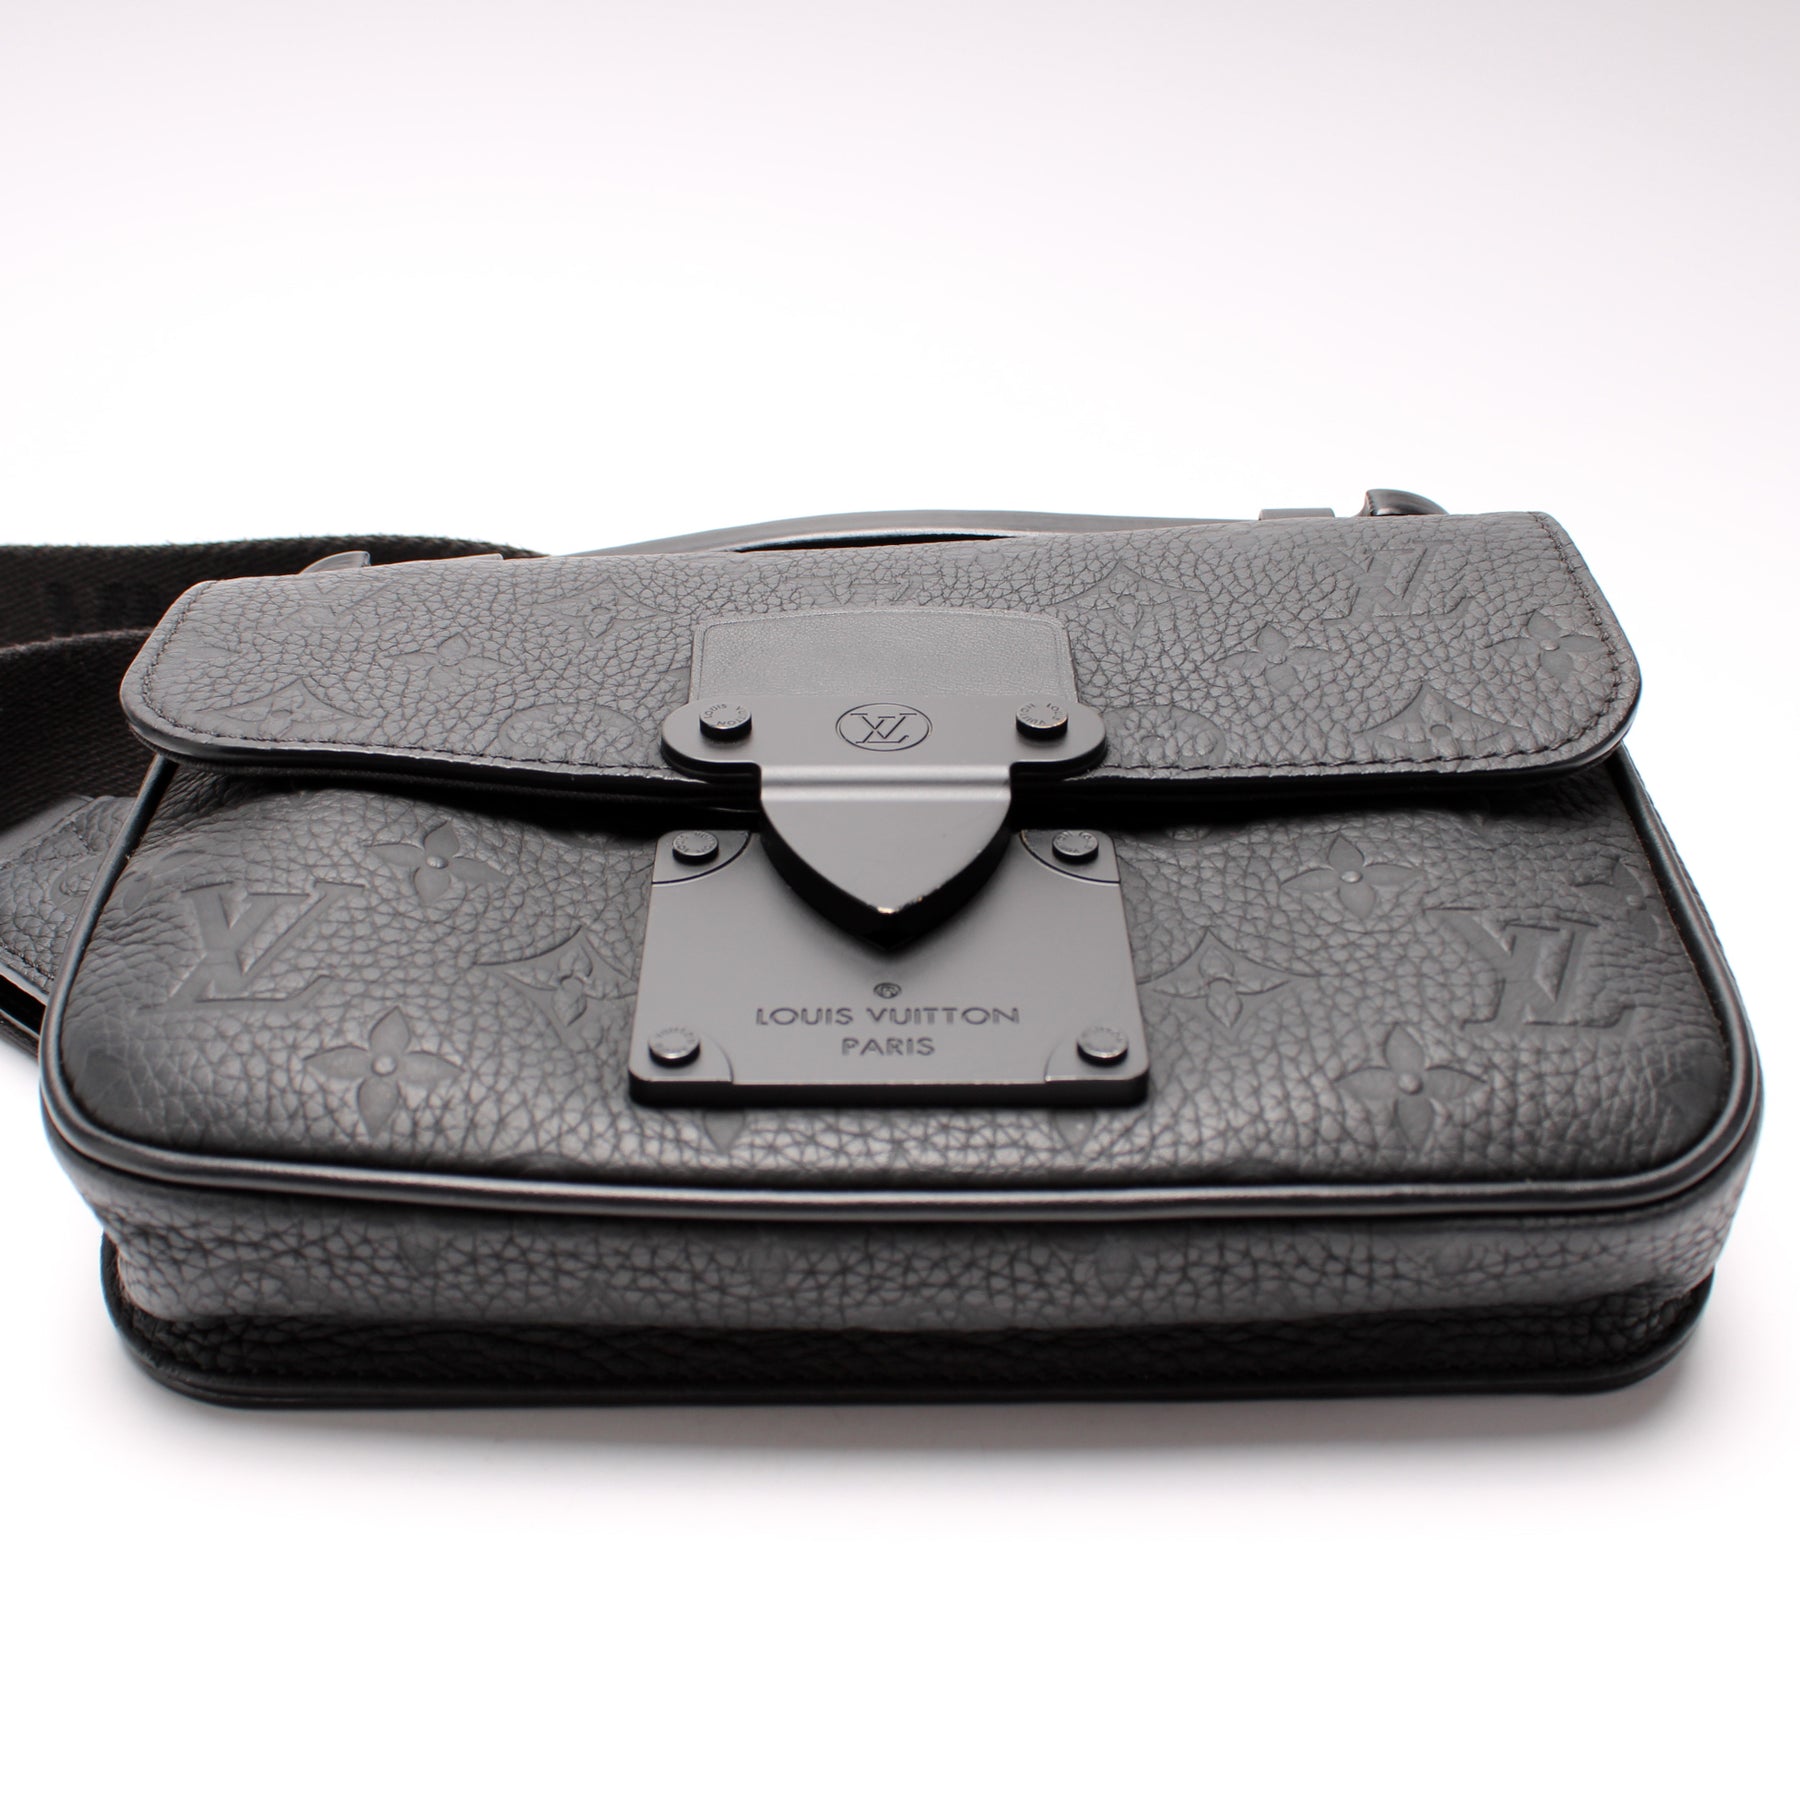 S Lock Slingbag Monogram Taurillon Leather - Men - Bags